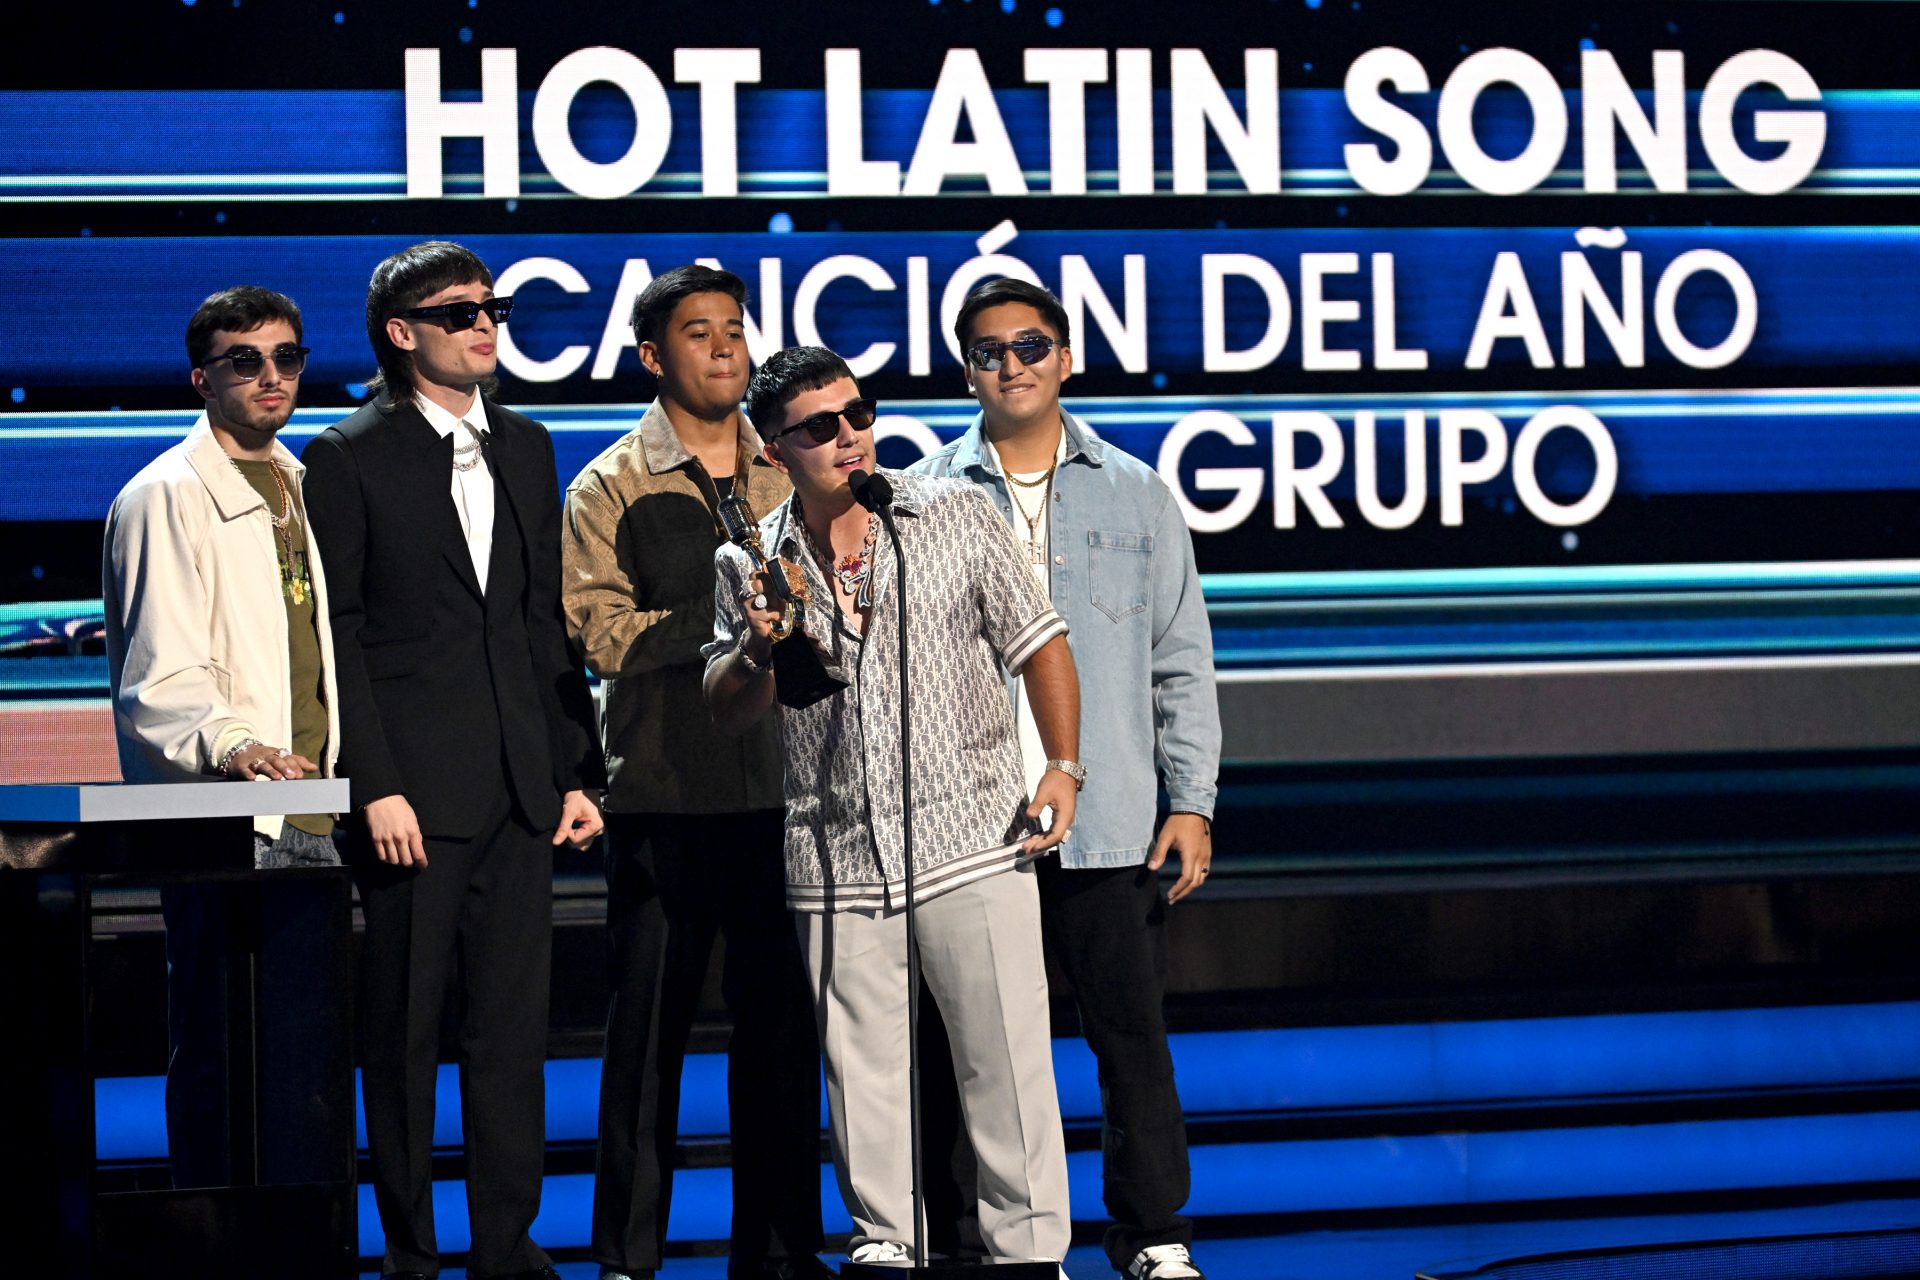 “Hot latin song” canción del año: